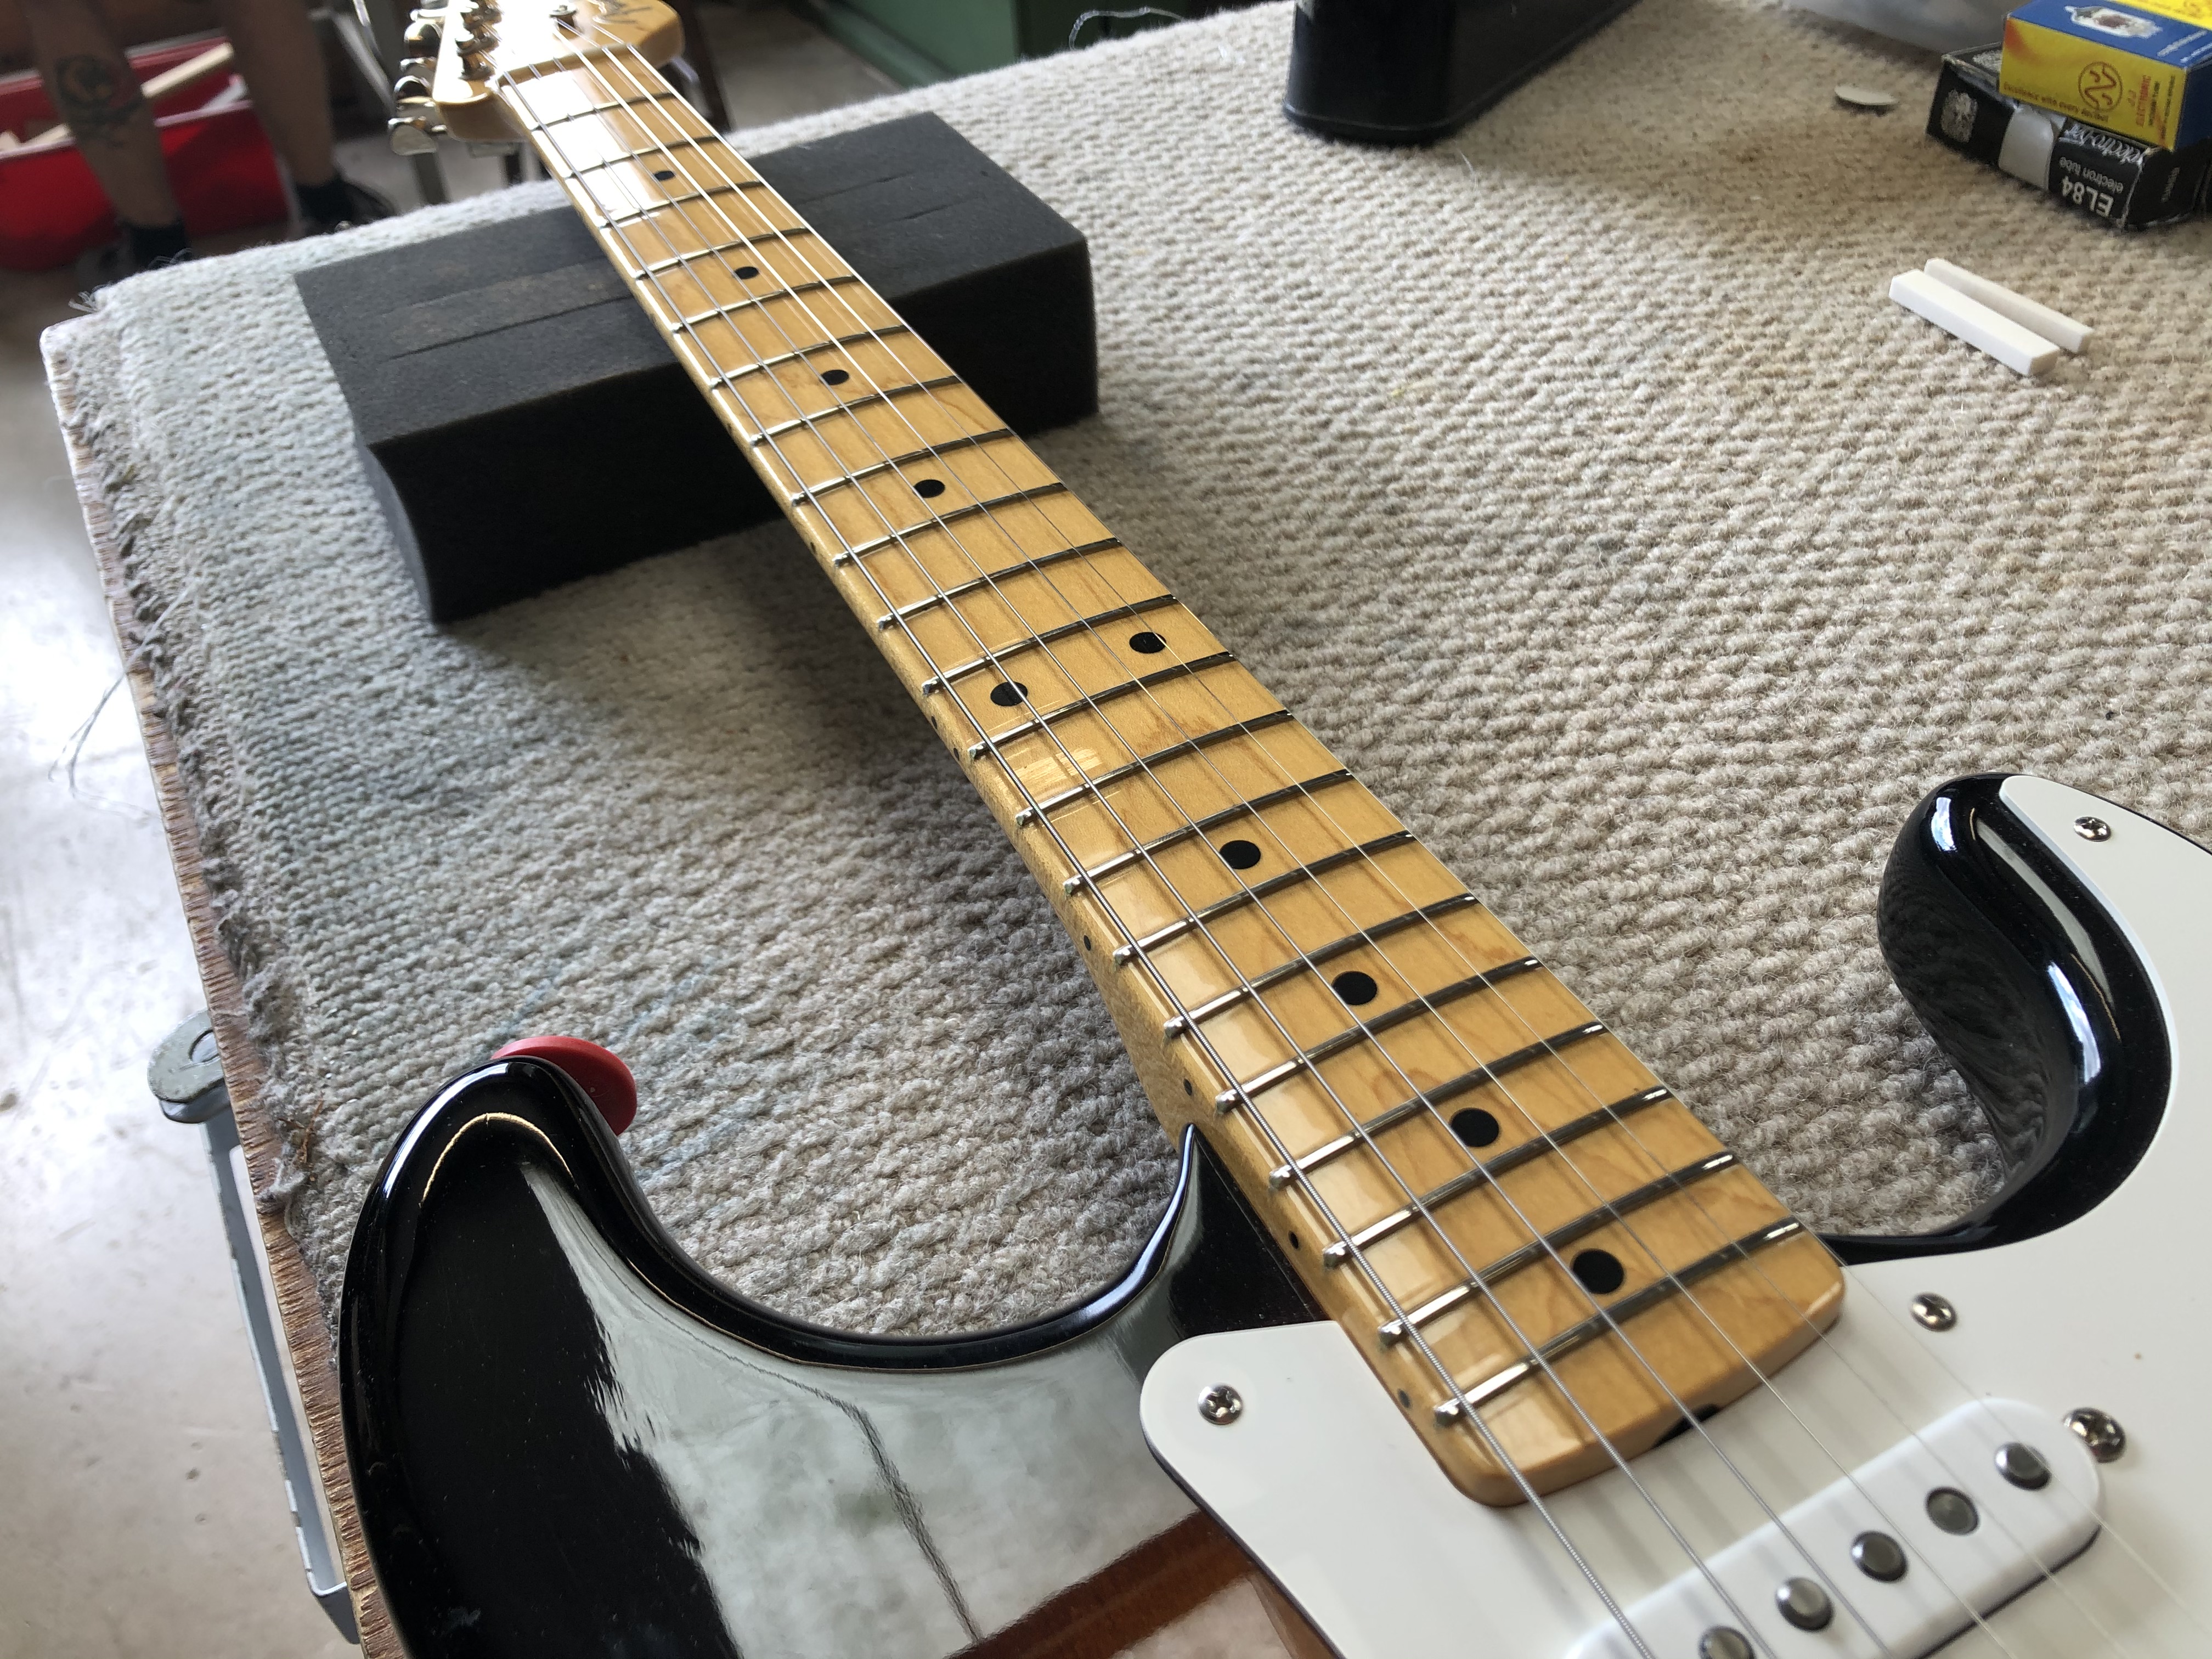 Setup on Fender Stratocaster